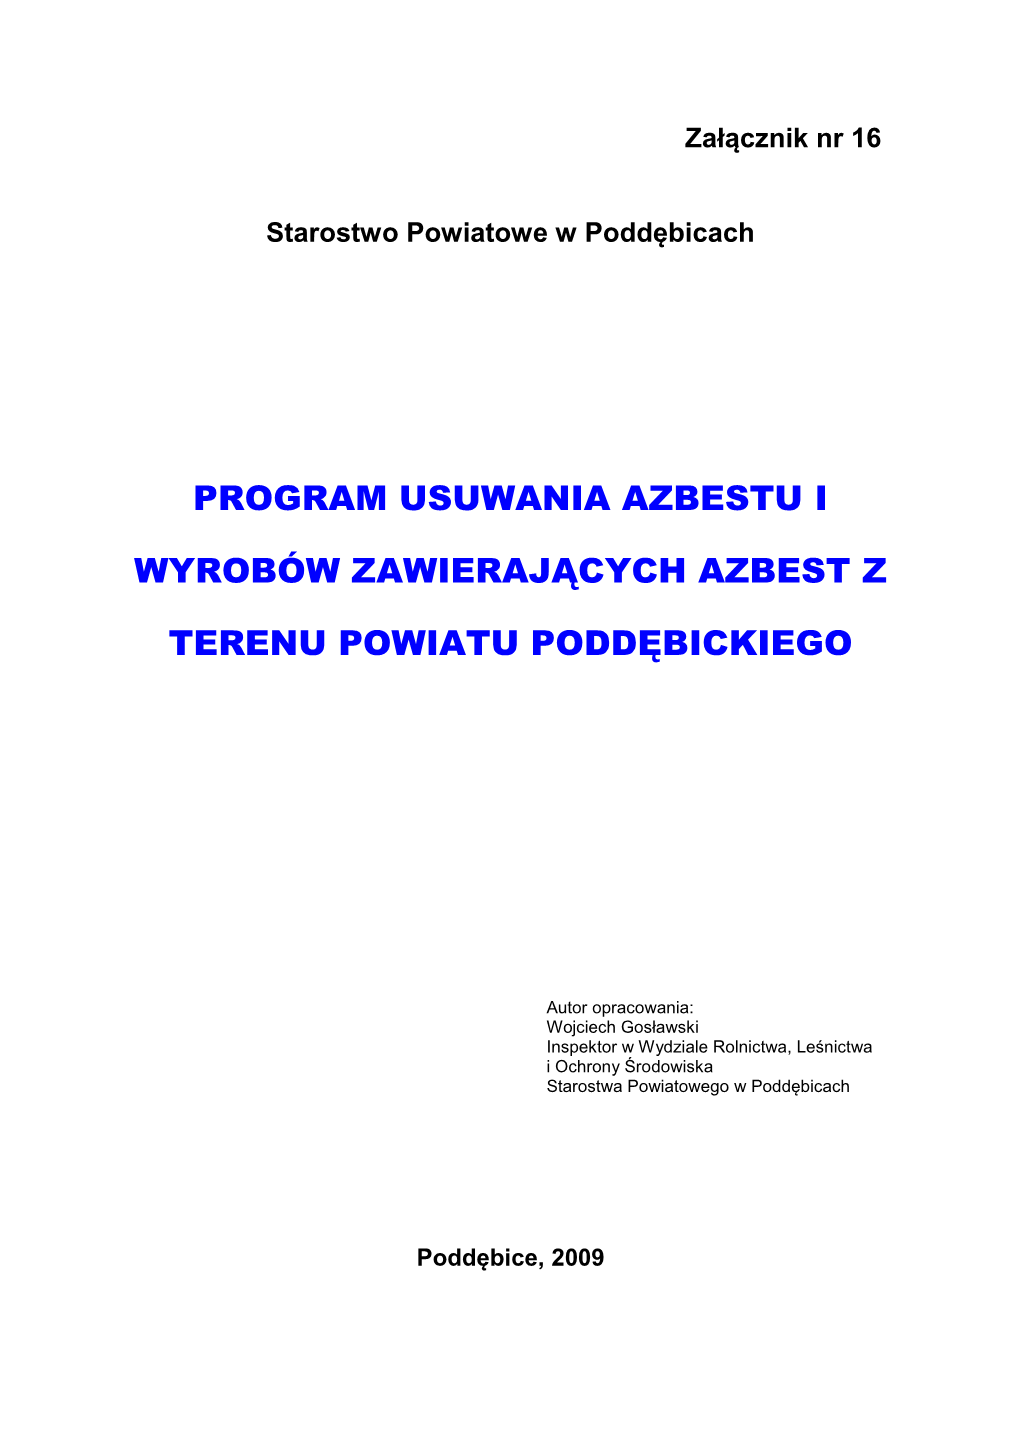 Program Usuwania Azbestu I Wyrobów Zawierających Azbest Stosowanych Na Terytorium Polski